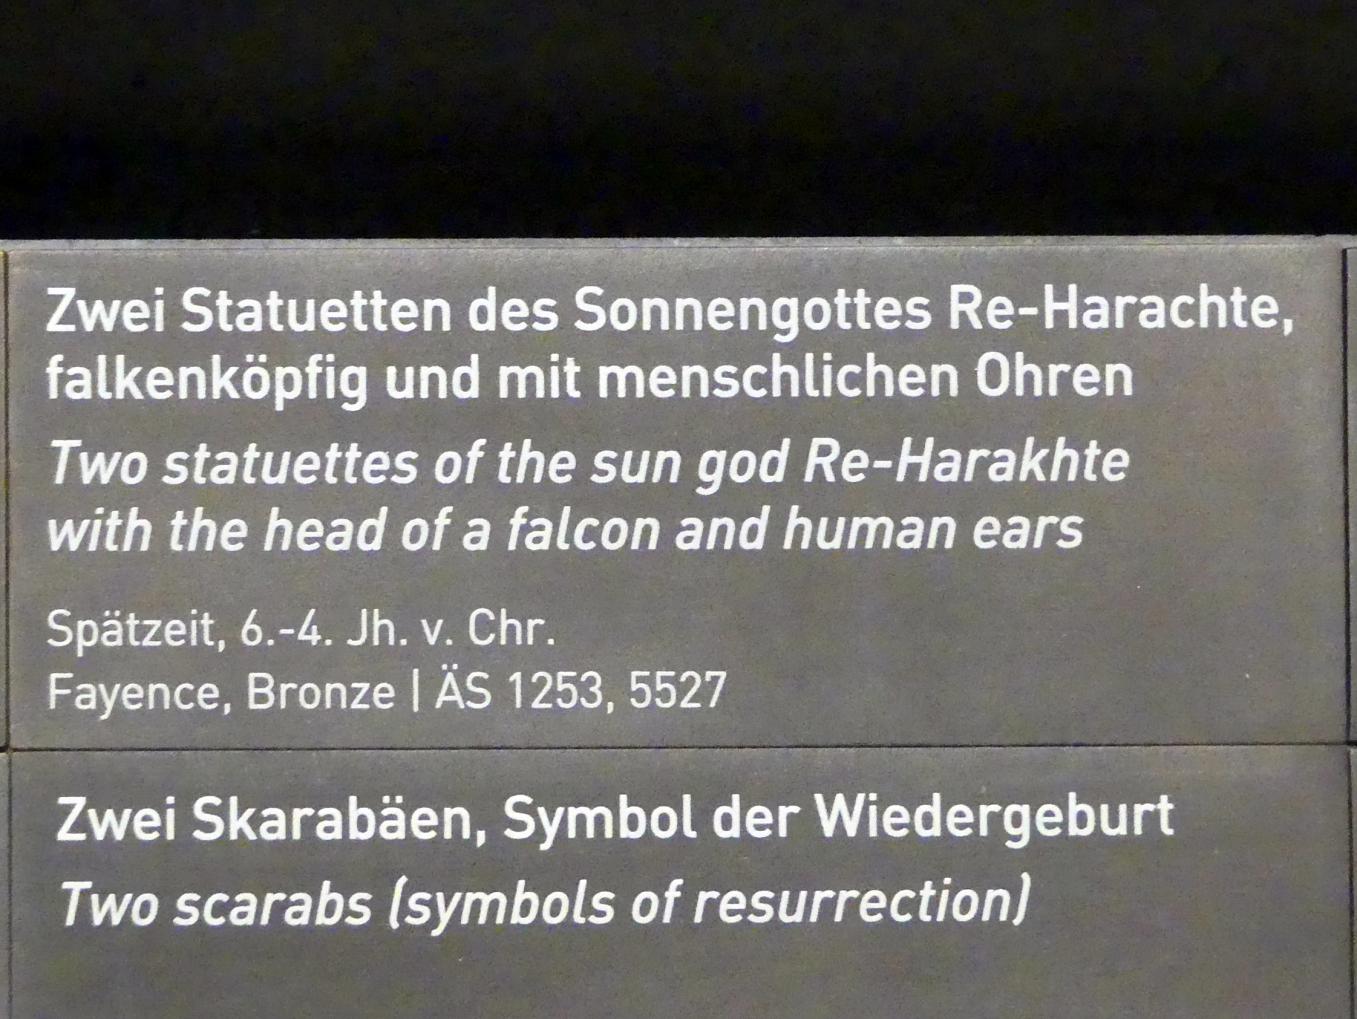 Statuette des falkenköpfigen Sonnengottes Re-Harachte mit menschlichen Ohren, Spätzeit, 360 - 342 v. Chr., 600 - 300 v. Chr., Bild 3/3